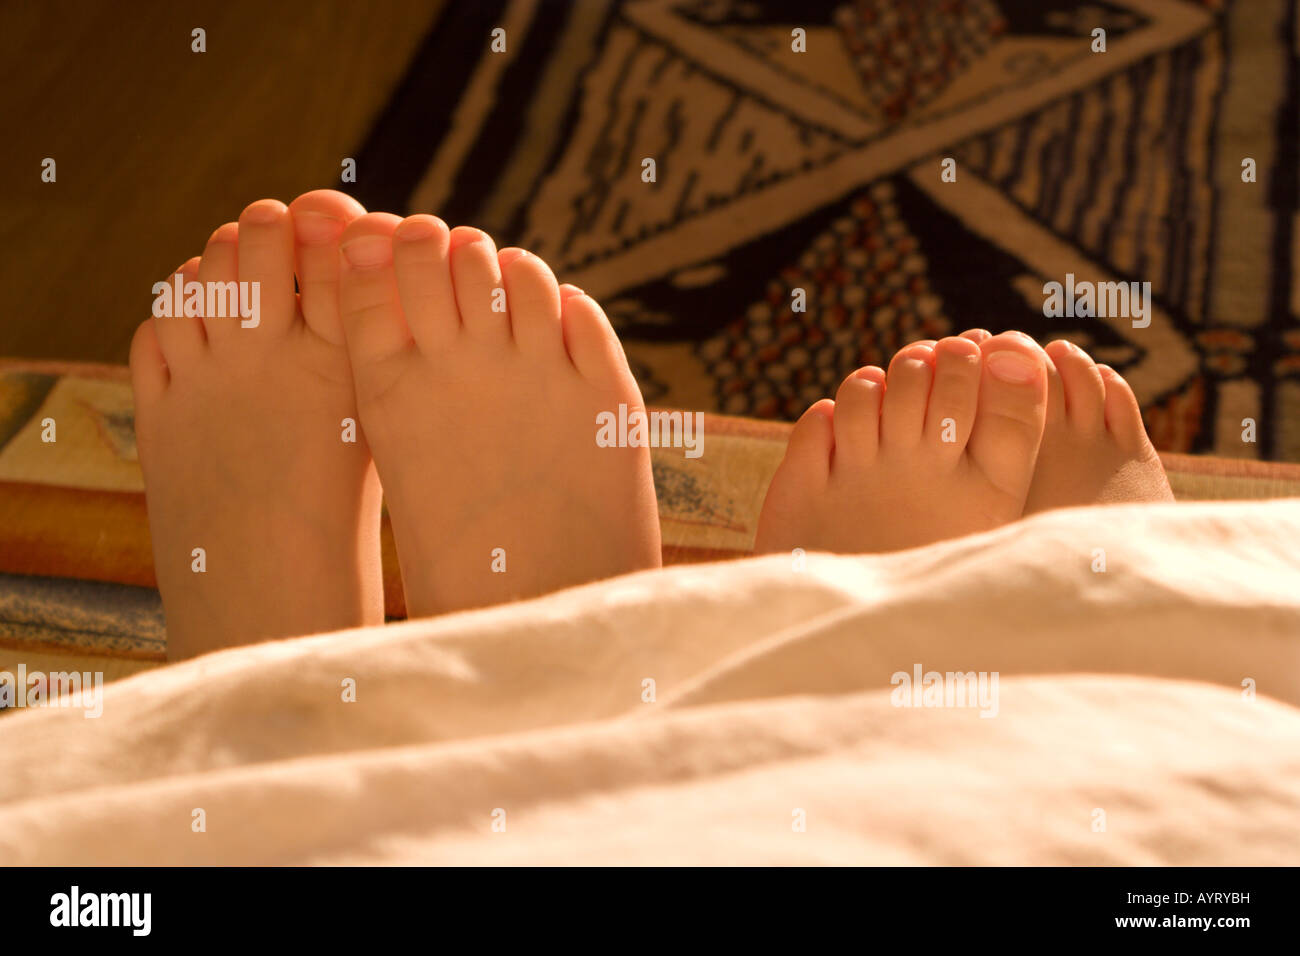 Donna adulto e bambino i piedi che spuntavano da sotto una coperta Foto Stock